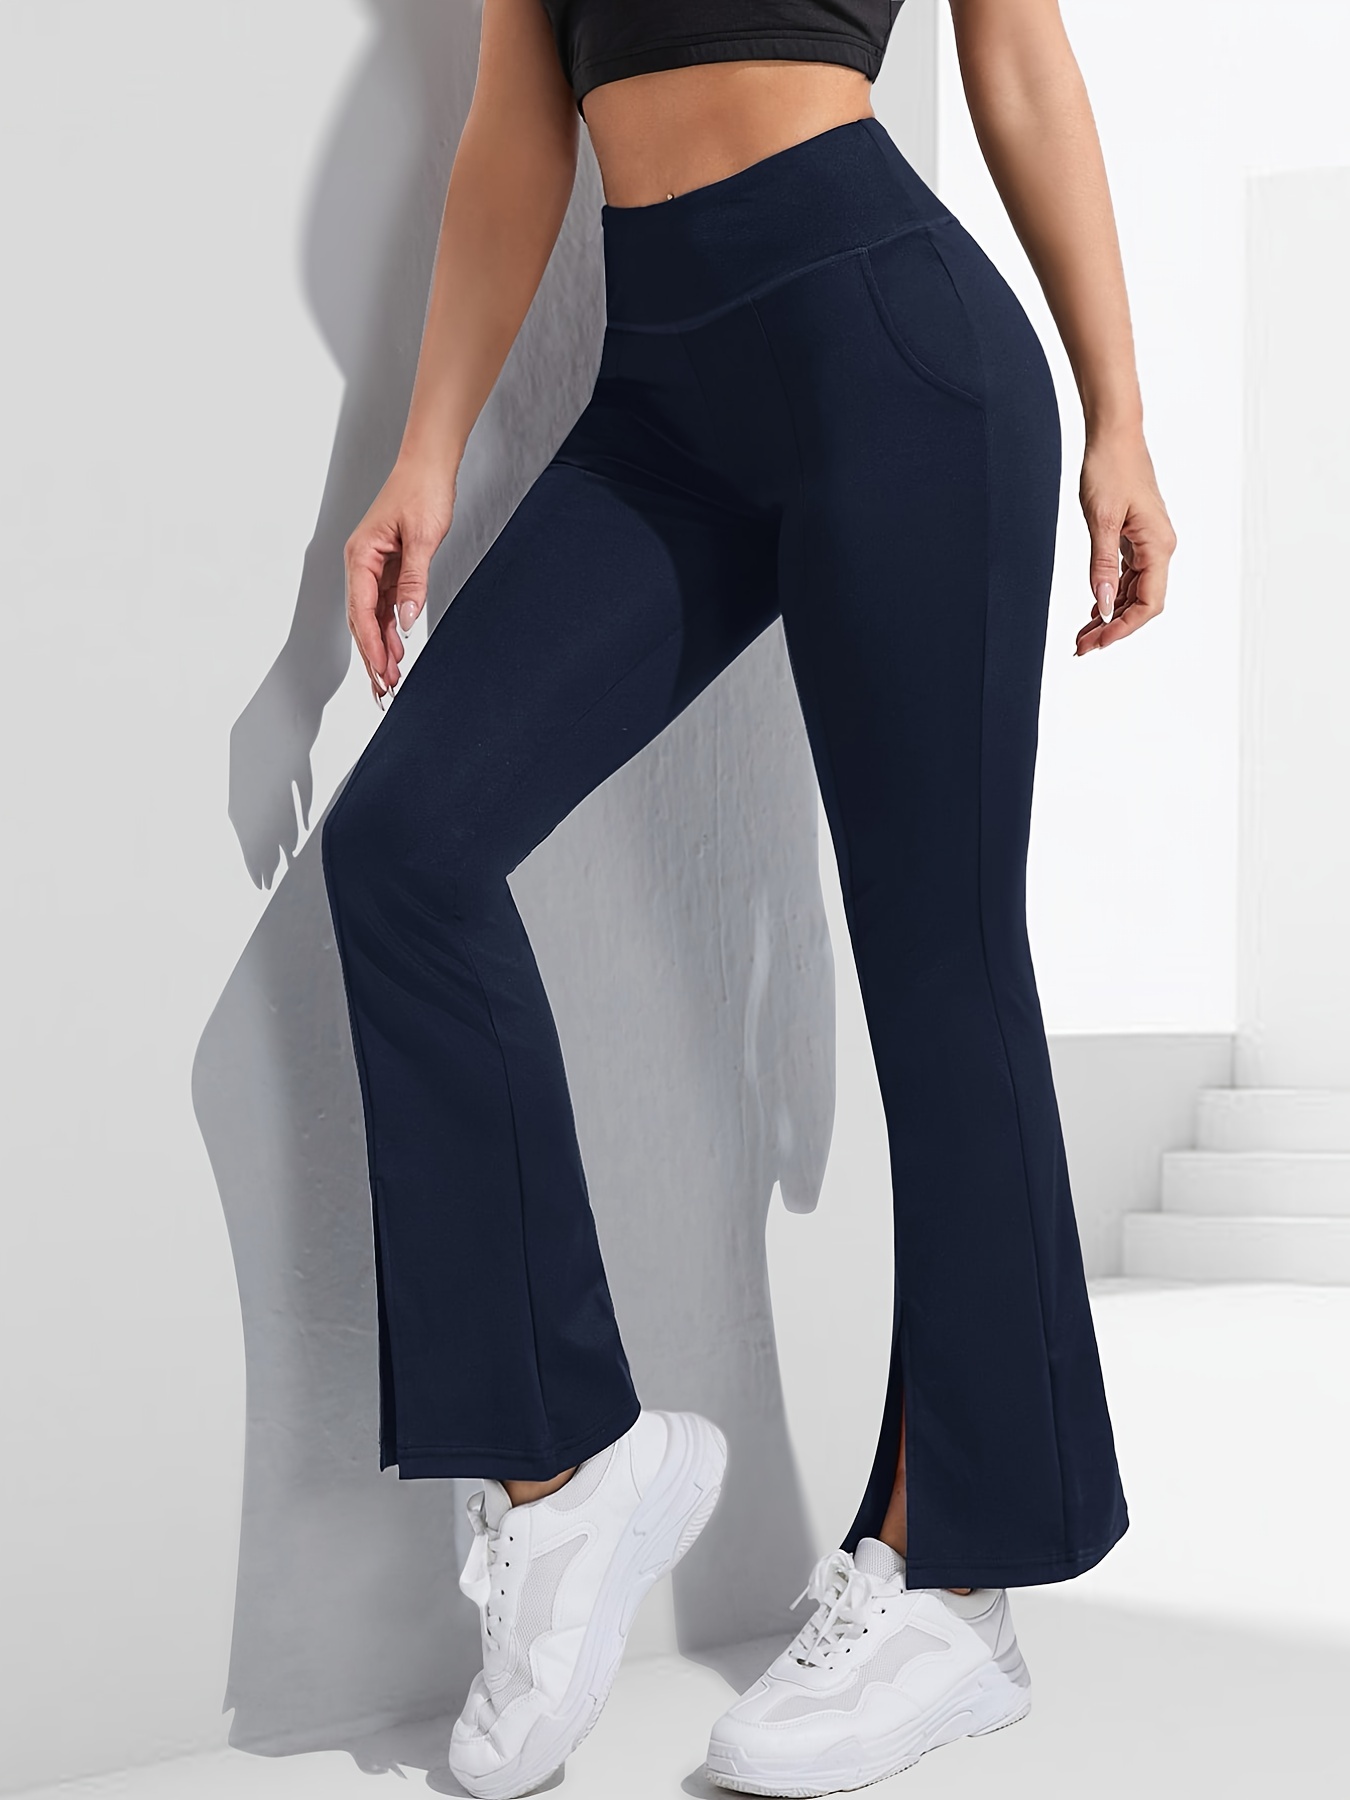 Women's Bootcut Trousers, Bootcut Yoga Pants